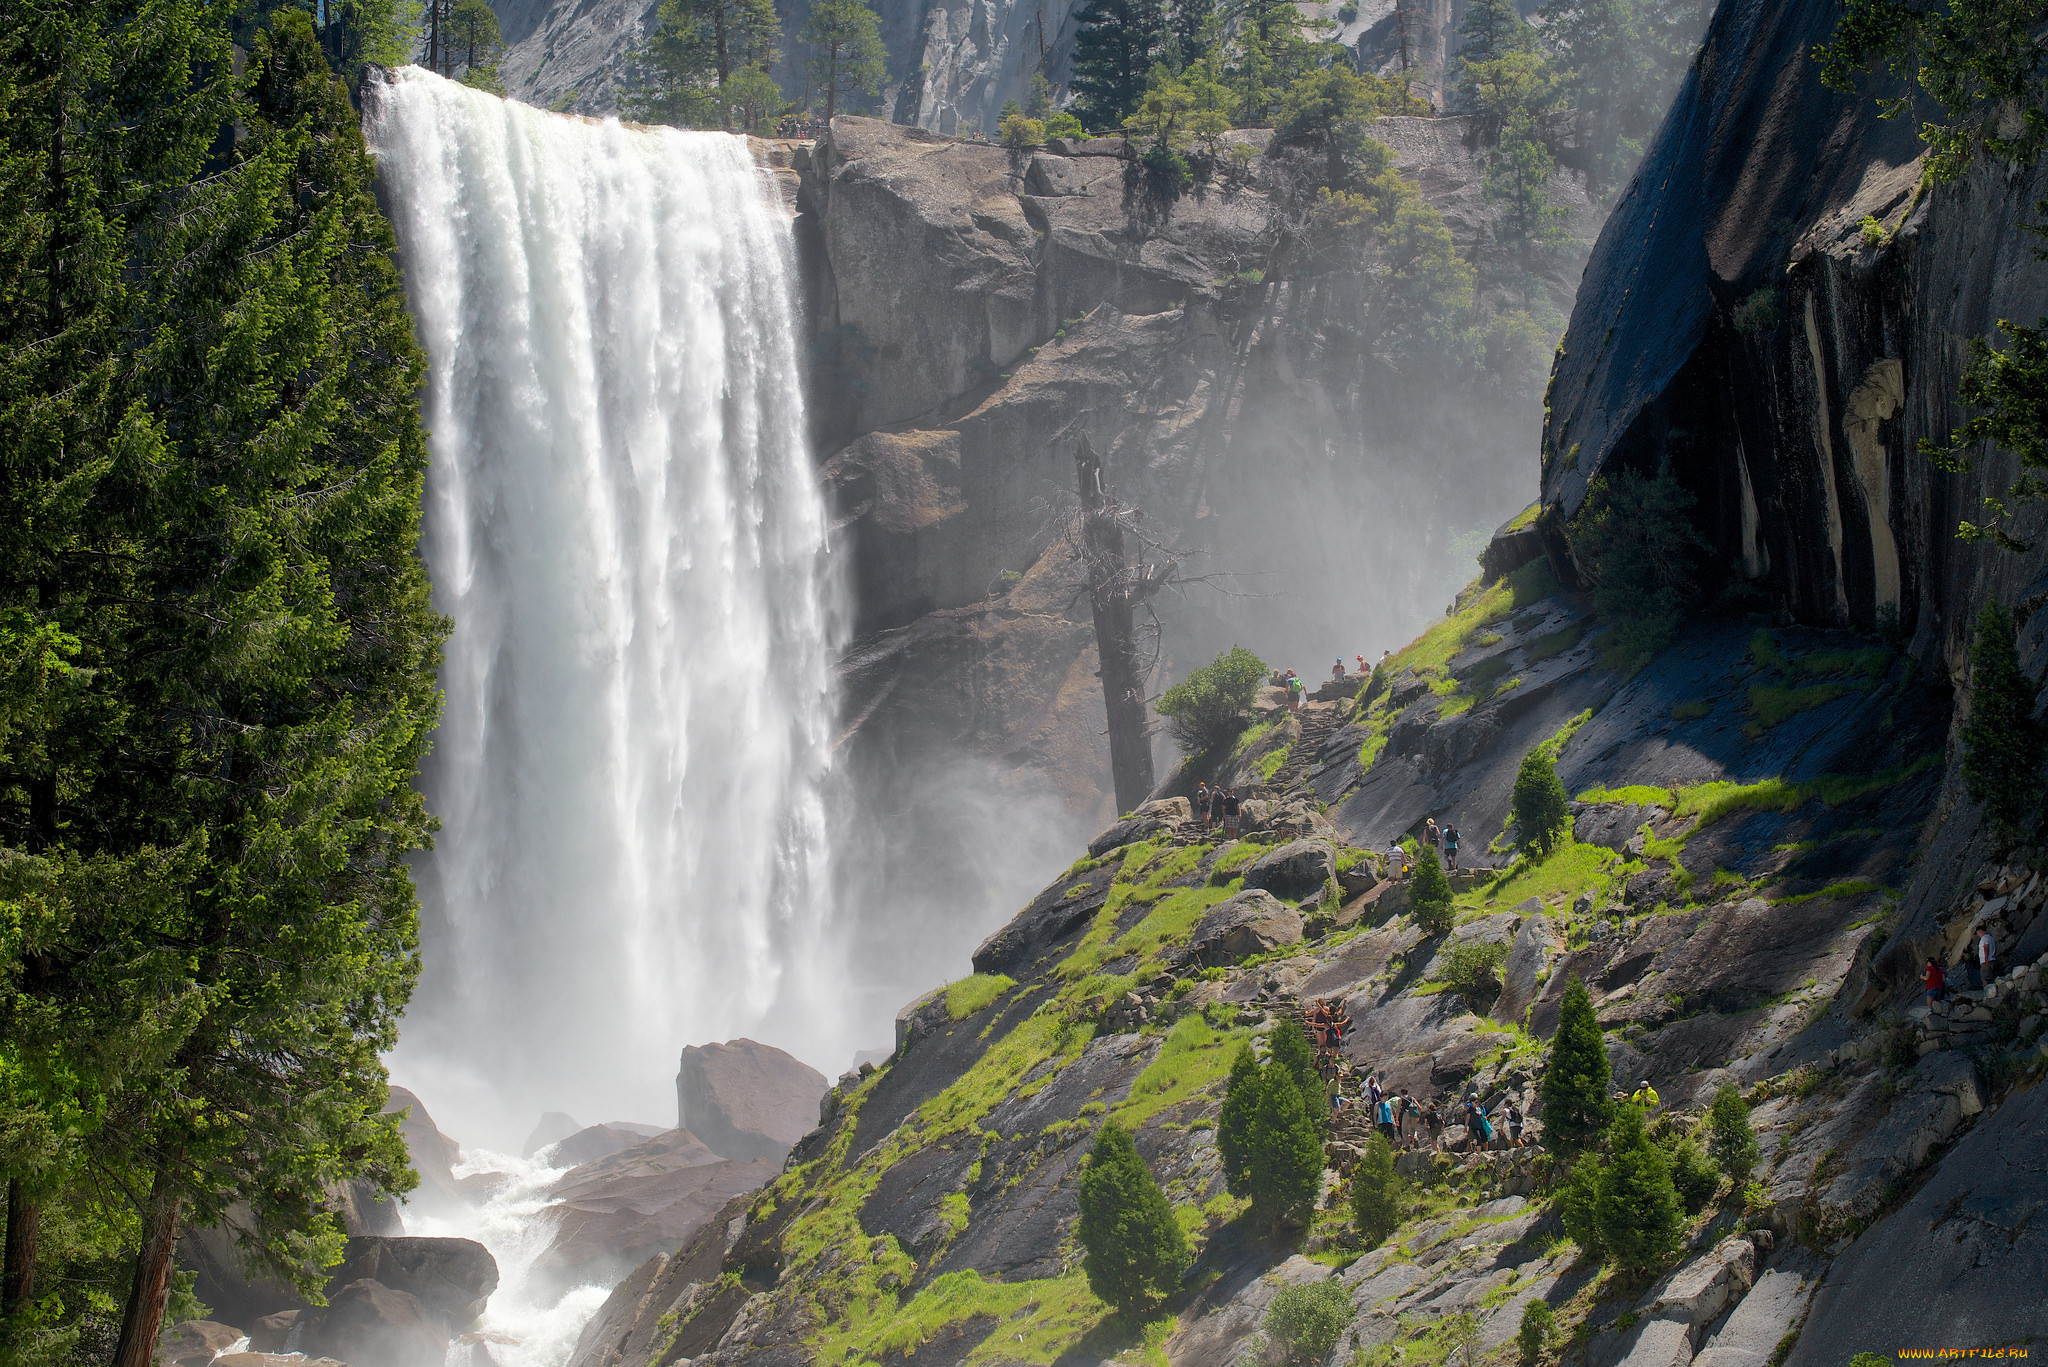 Действующий водопад. Каскад водопад Йосемити. Водопад Невада в Йосемити. Водопад Текелю горный Алтай. Водопад Вернал, Калифорния, США.